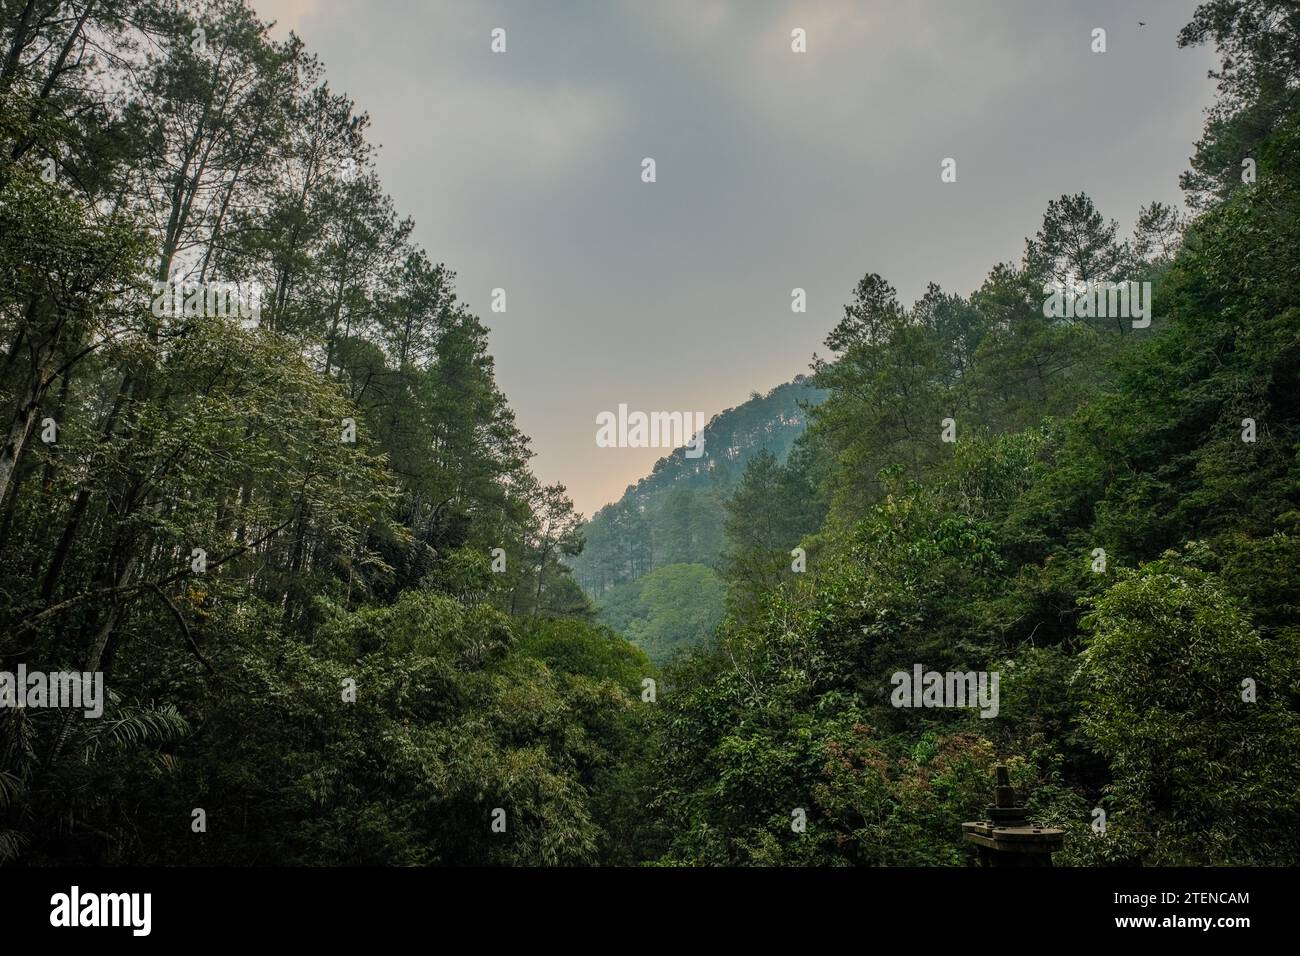 Immergetevi nel fascino sereno di Taman Hutan, un parco naturale di flora indonesiana vicino a Bandung, dove vegetazione lussureggiante e flora vibrante creano un pisello Foto Stock